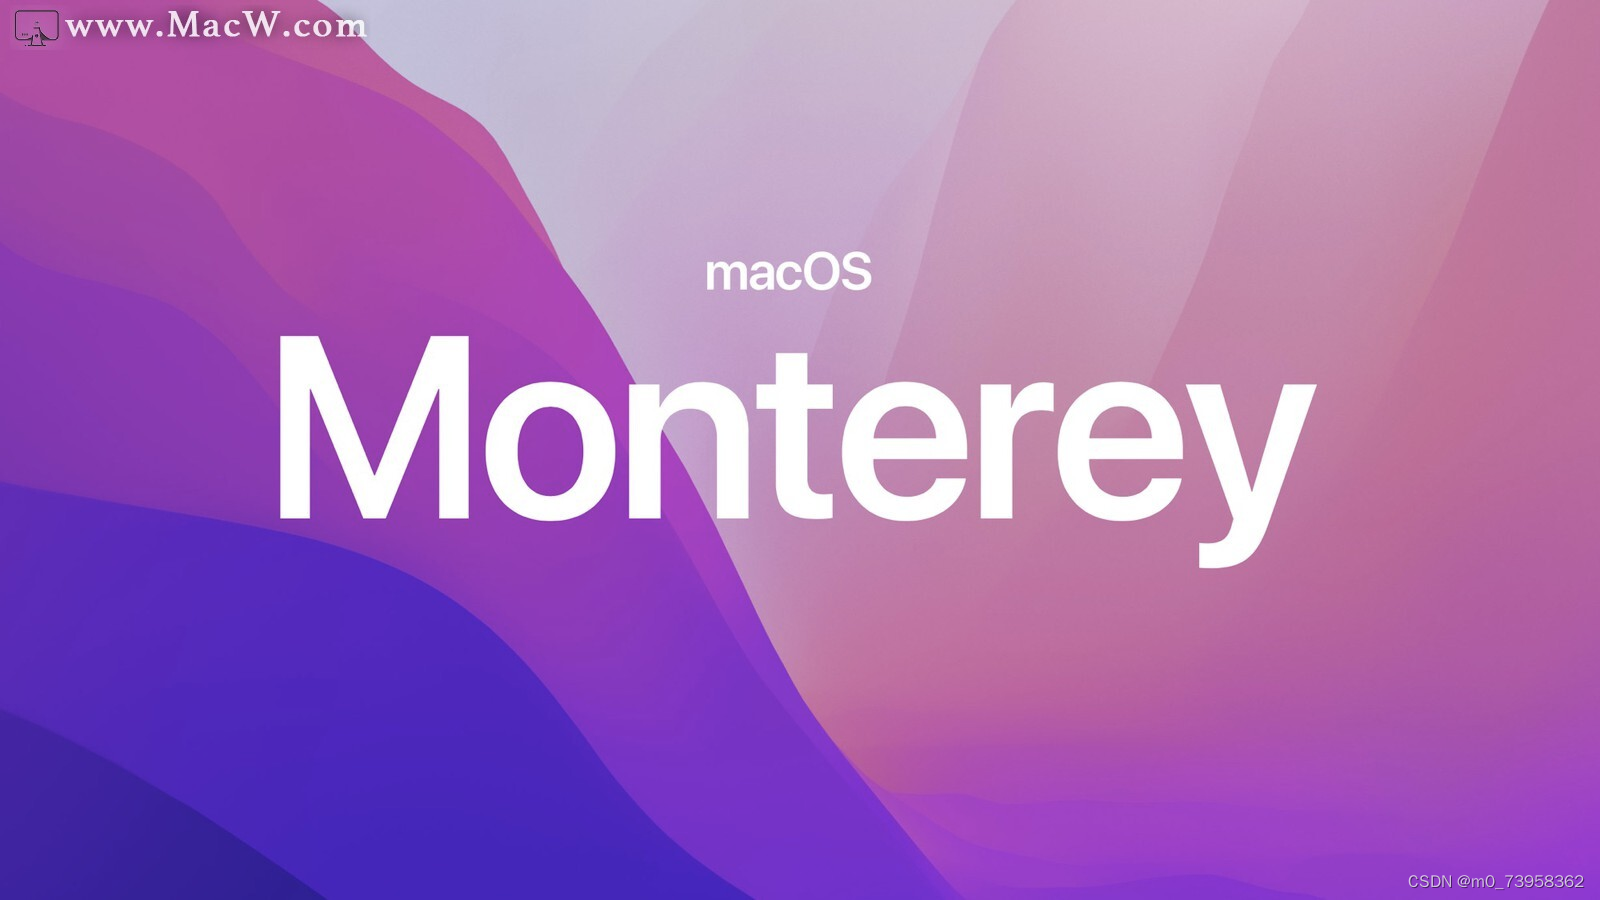 macOS 12 Monterey 支持电脑型号macOS Monterey 12新功能